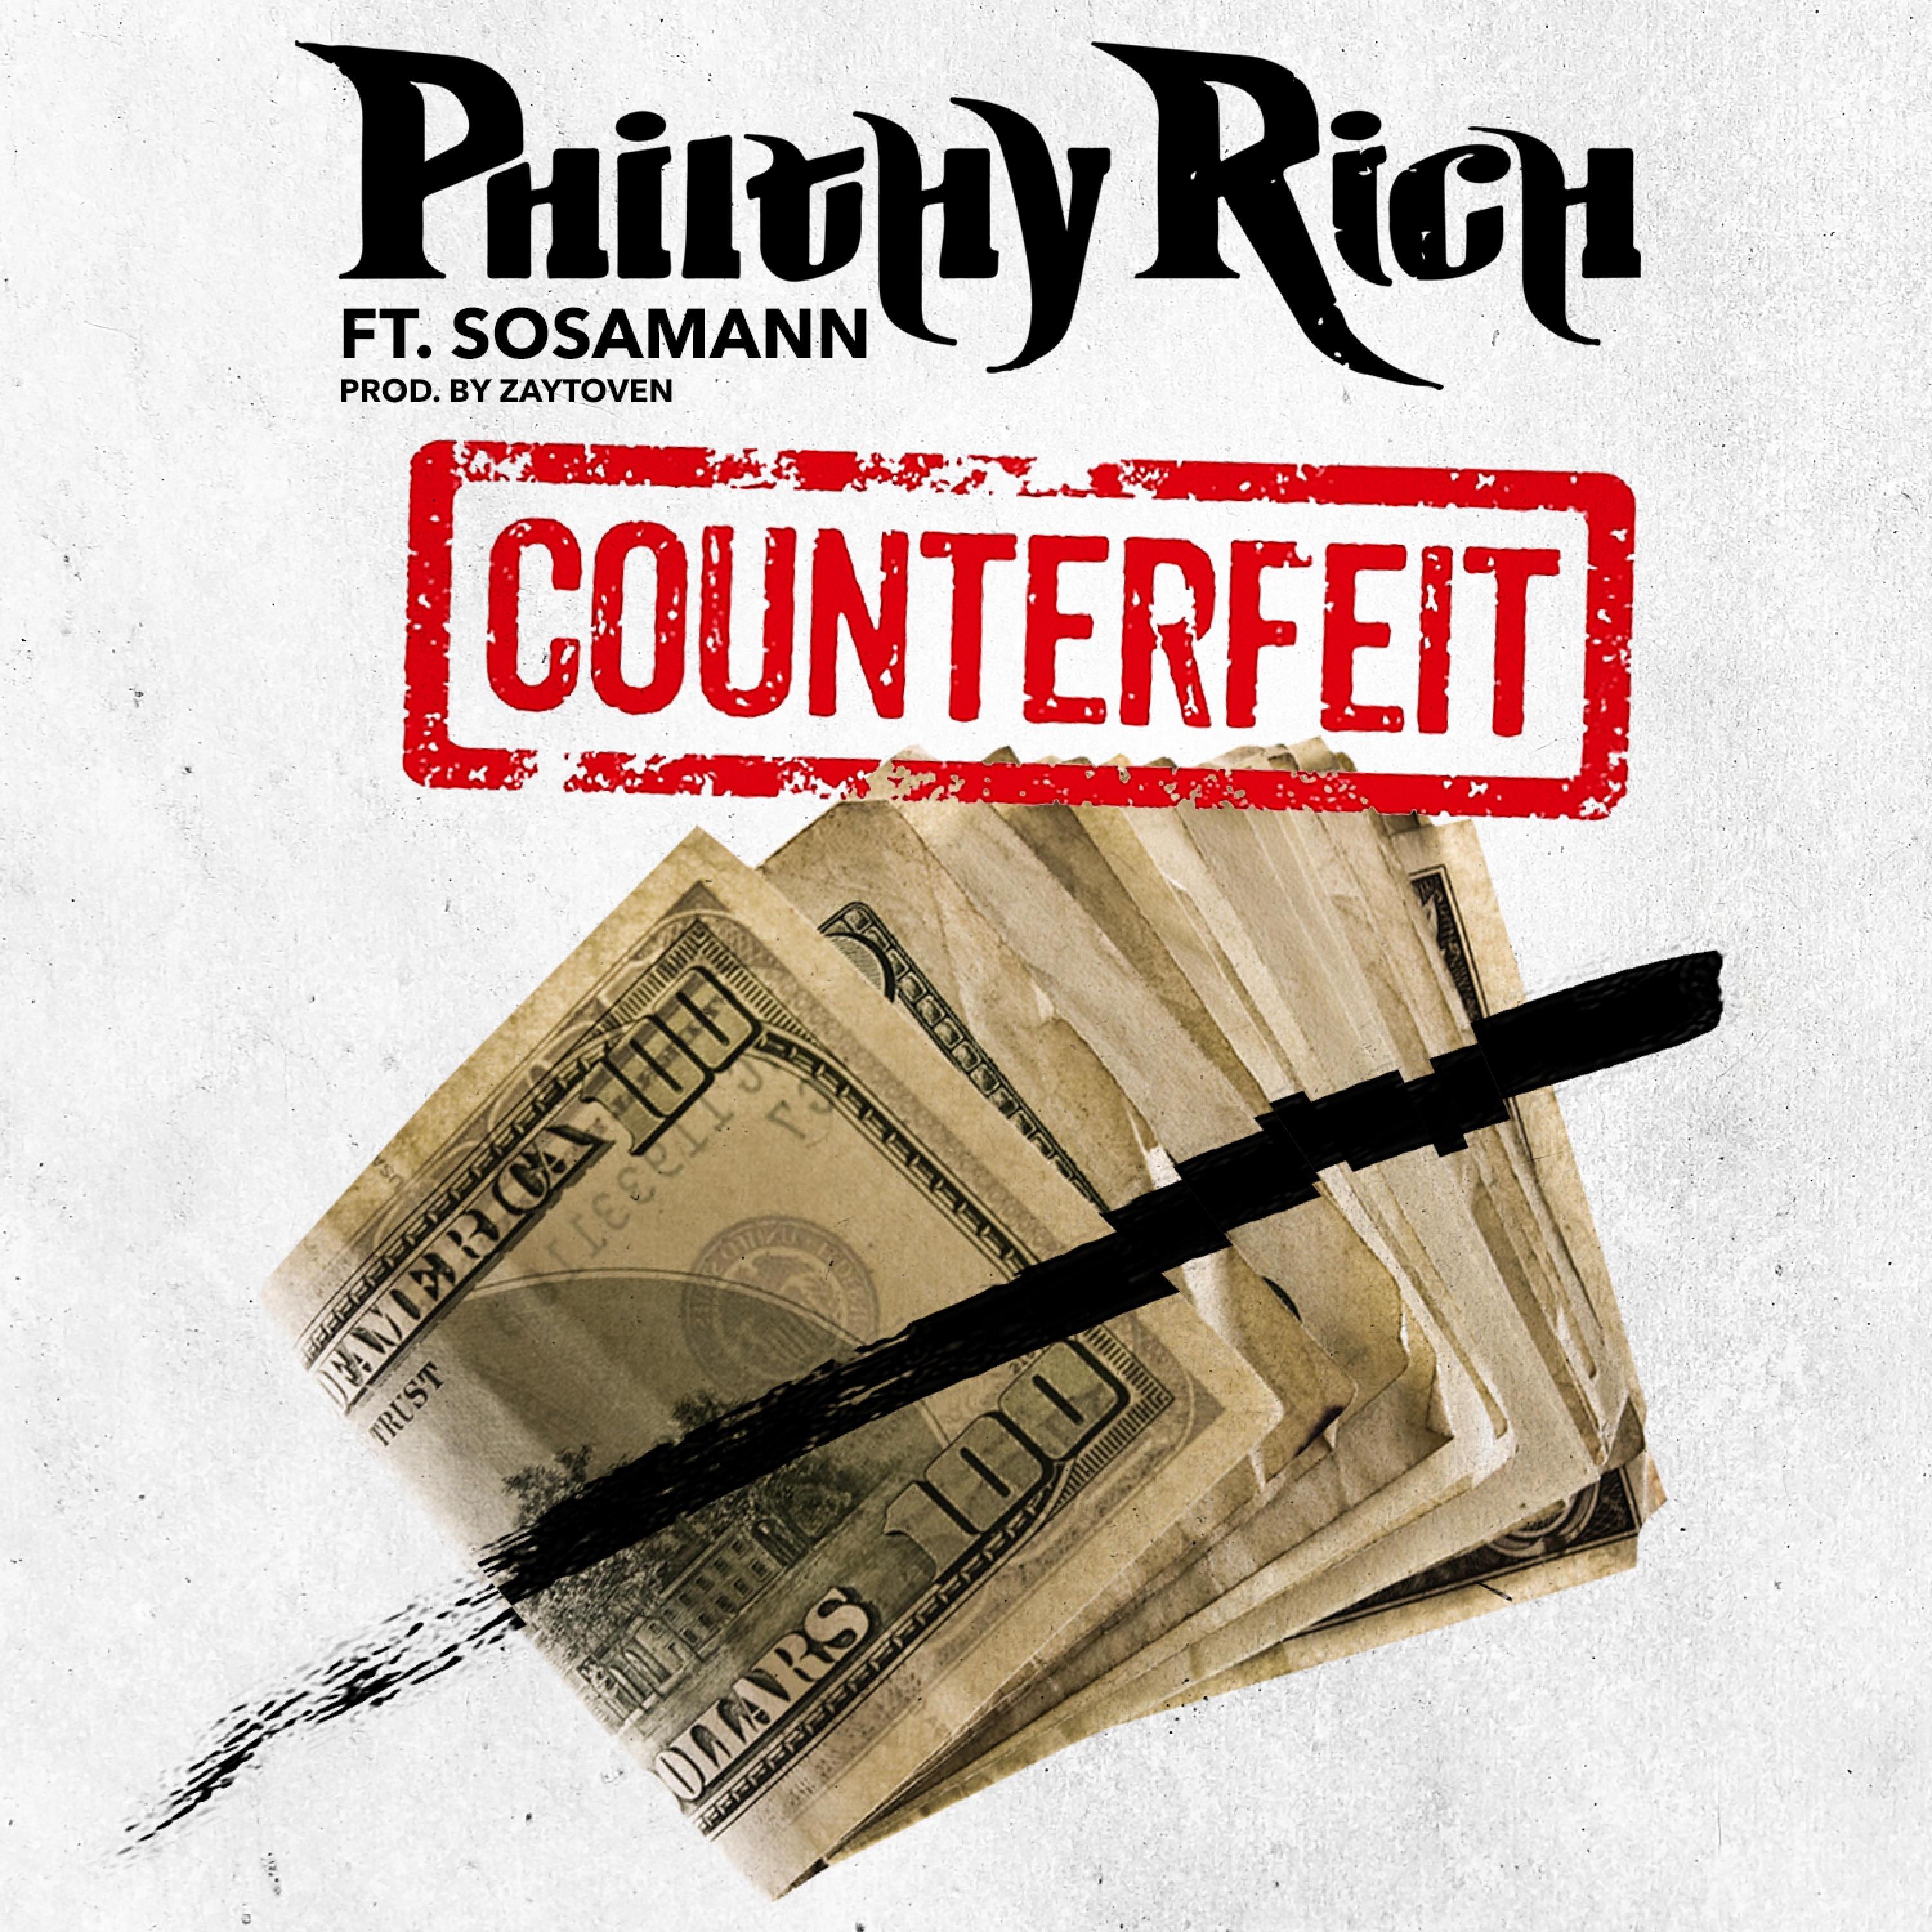 Counterfeit (Feat. Sosamann) - Single